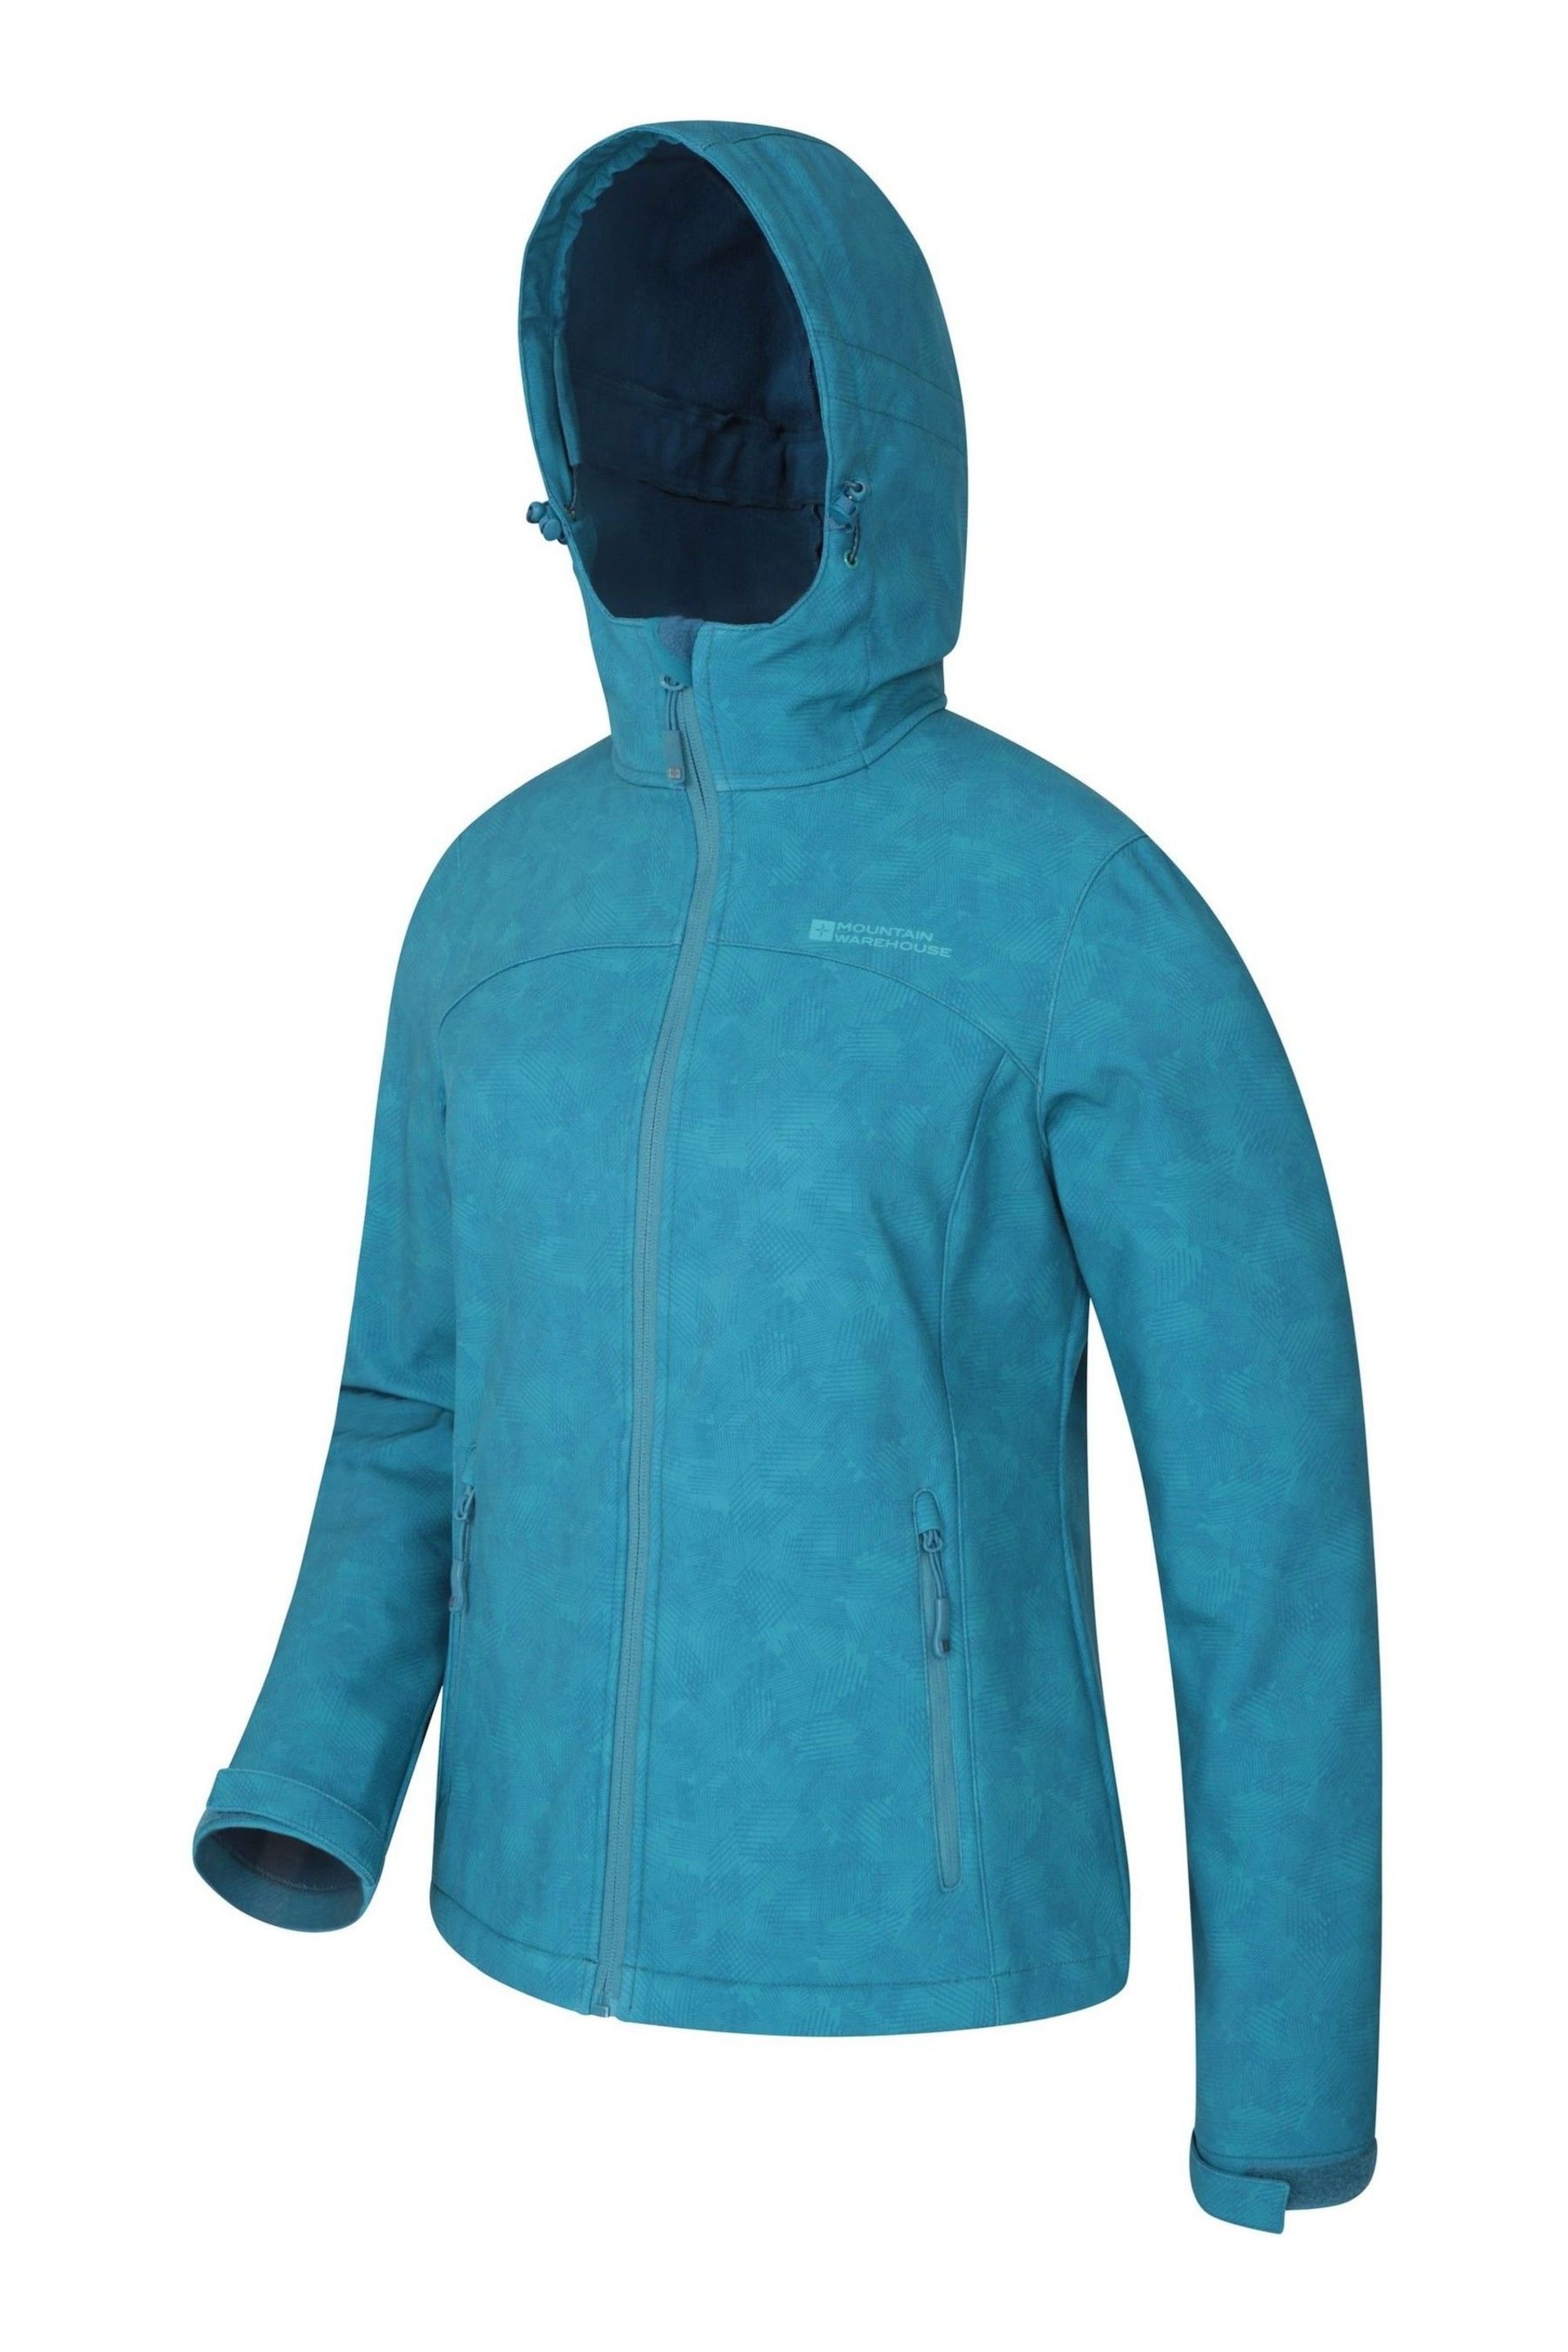 Mountain Warehouse Dark Blue Exodus Womens Softshell Jacket - Image 4 of 4